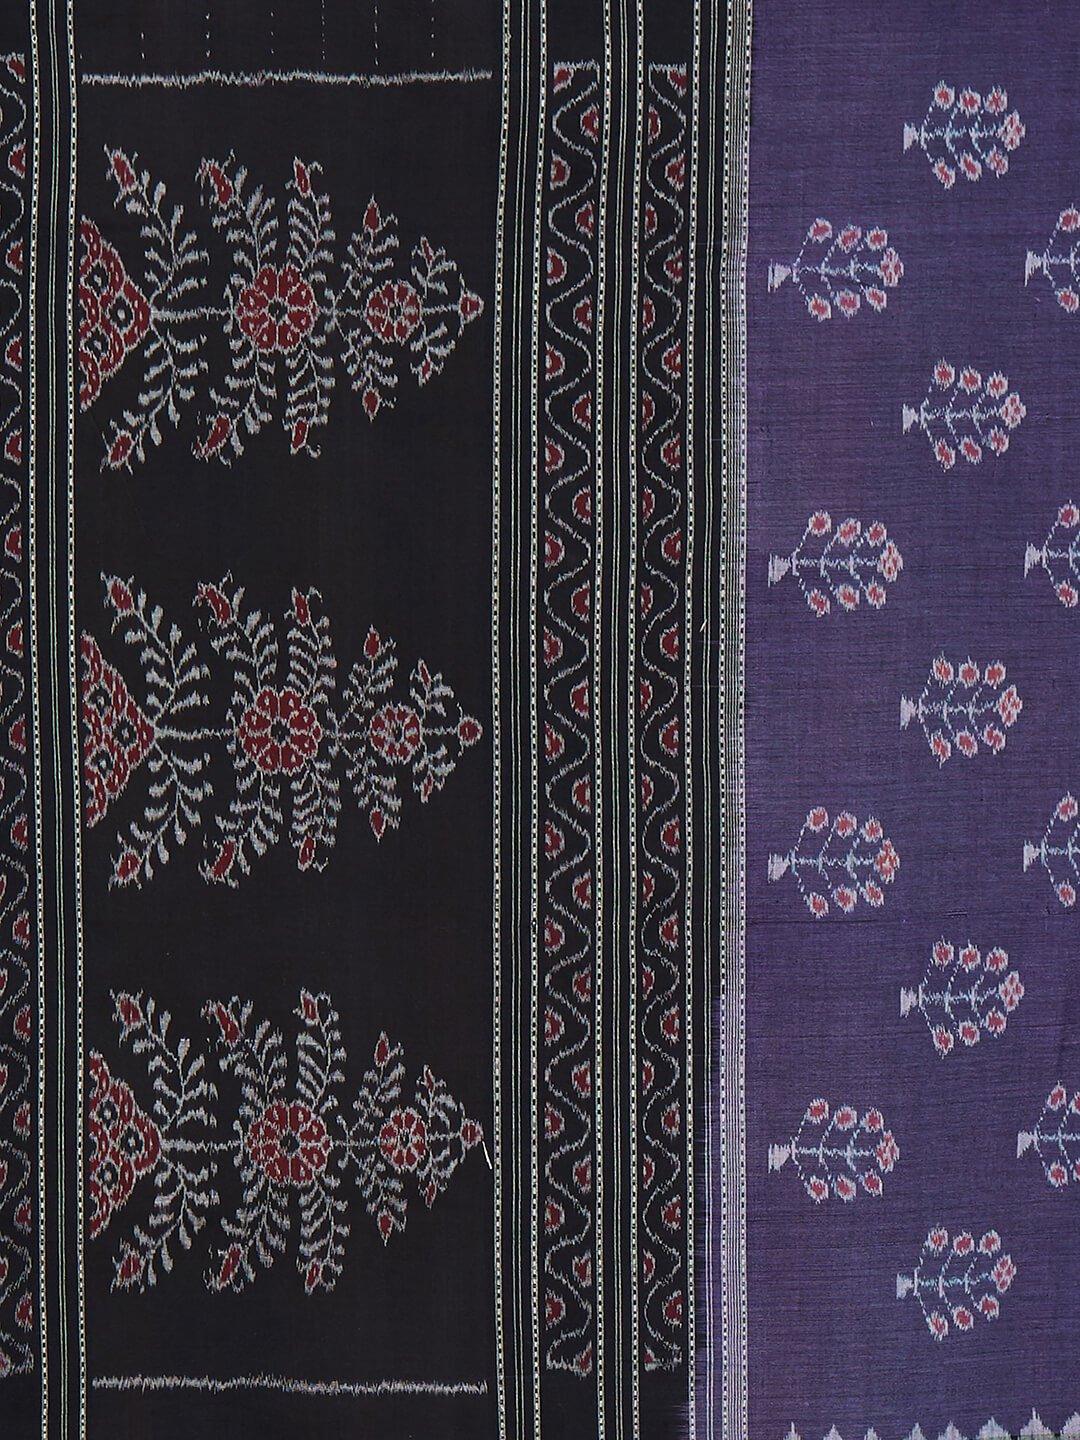 CraftsCollection.in - Purple Double Ikat Sambalpuri Cotton Dupatta